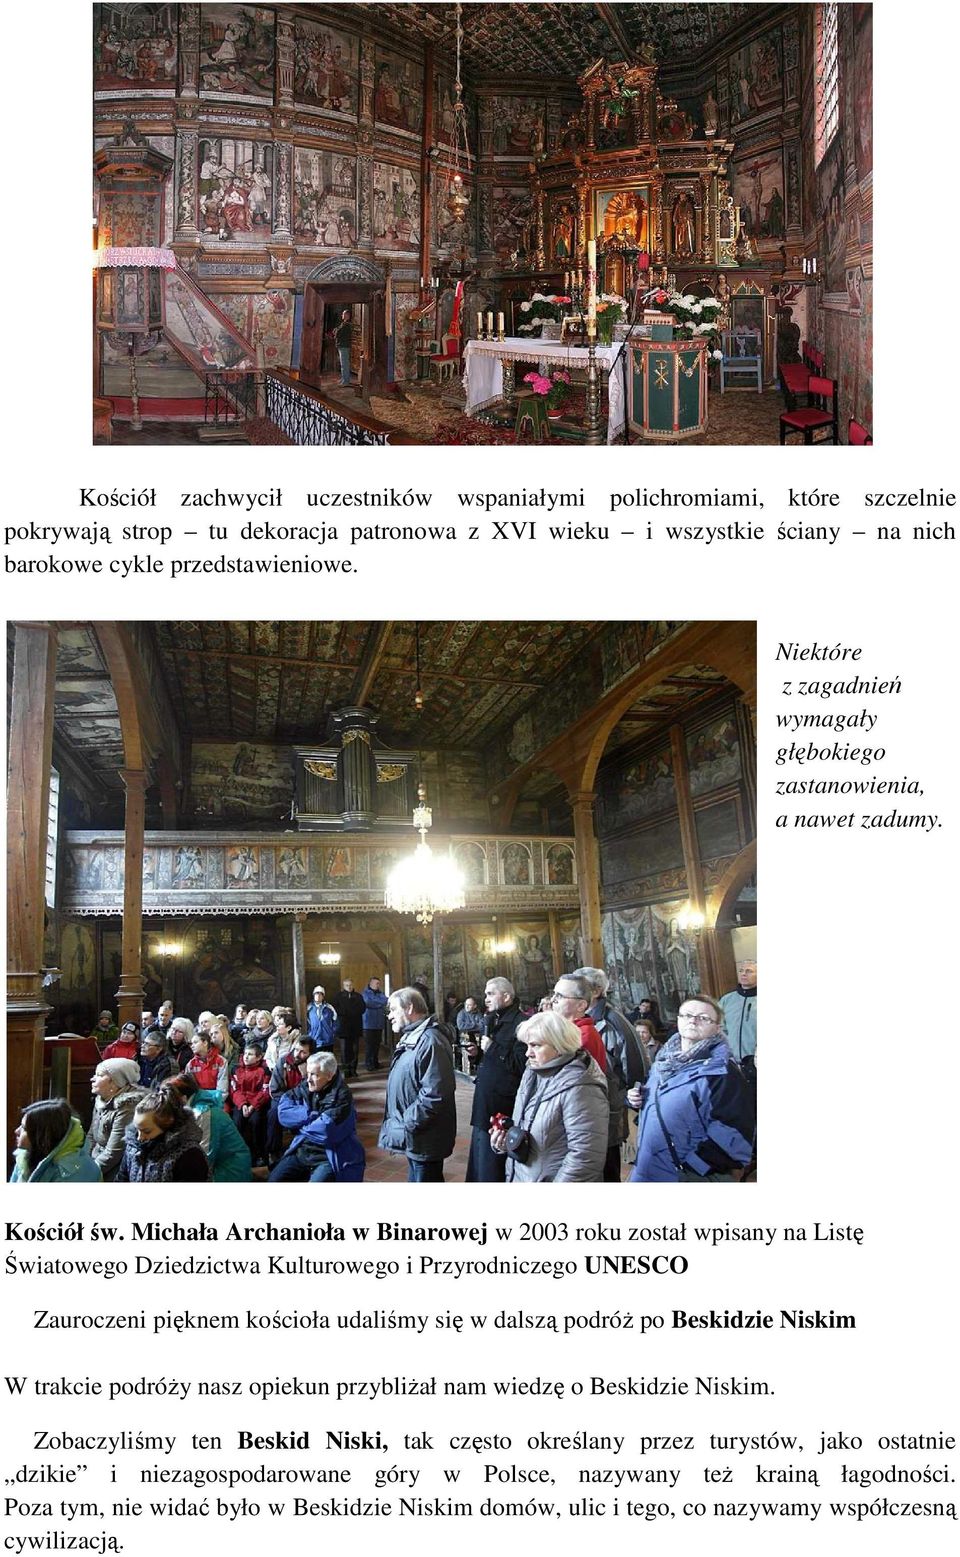 Michała Archanioła w Binarowej w 2003 roku został wpisany na Listę Światowego Dziedzictwa Kulturowego i Przyrodniczego UNESCO Zauroczeni pięknem kościoła udaliśmy się w dalszą podróż po Beskidzie